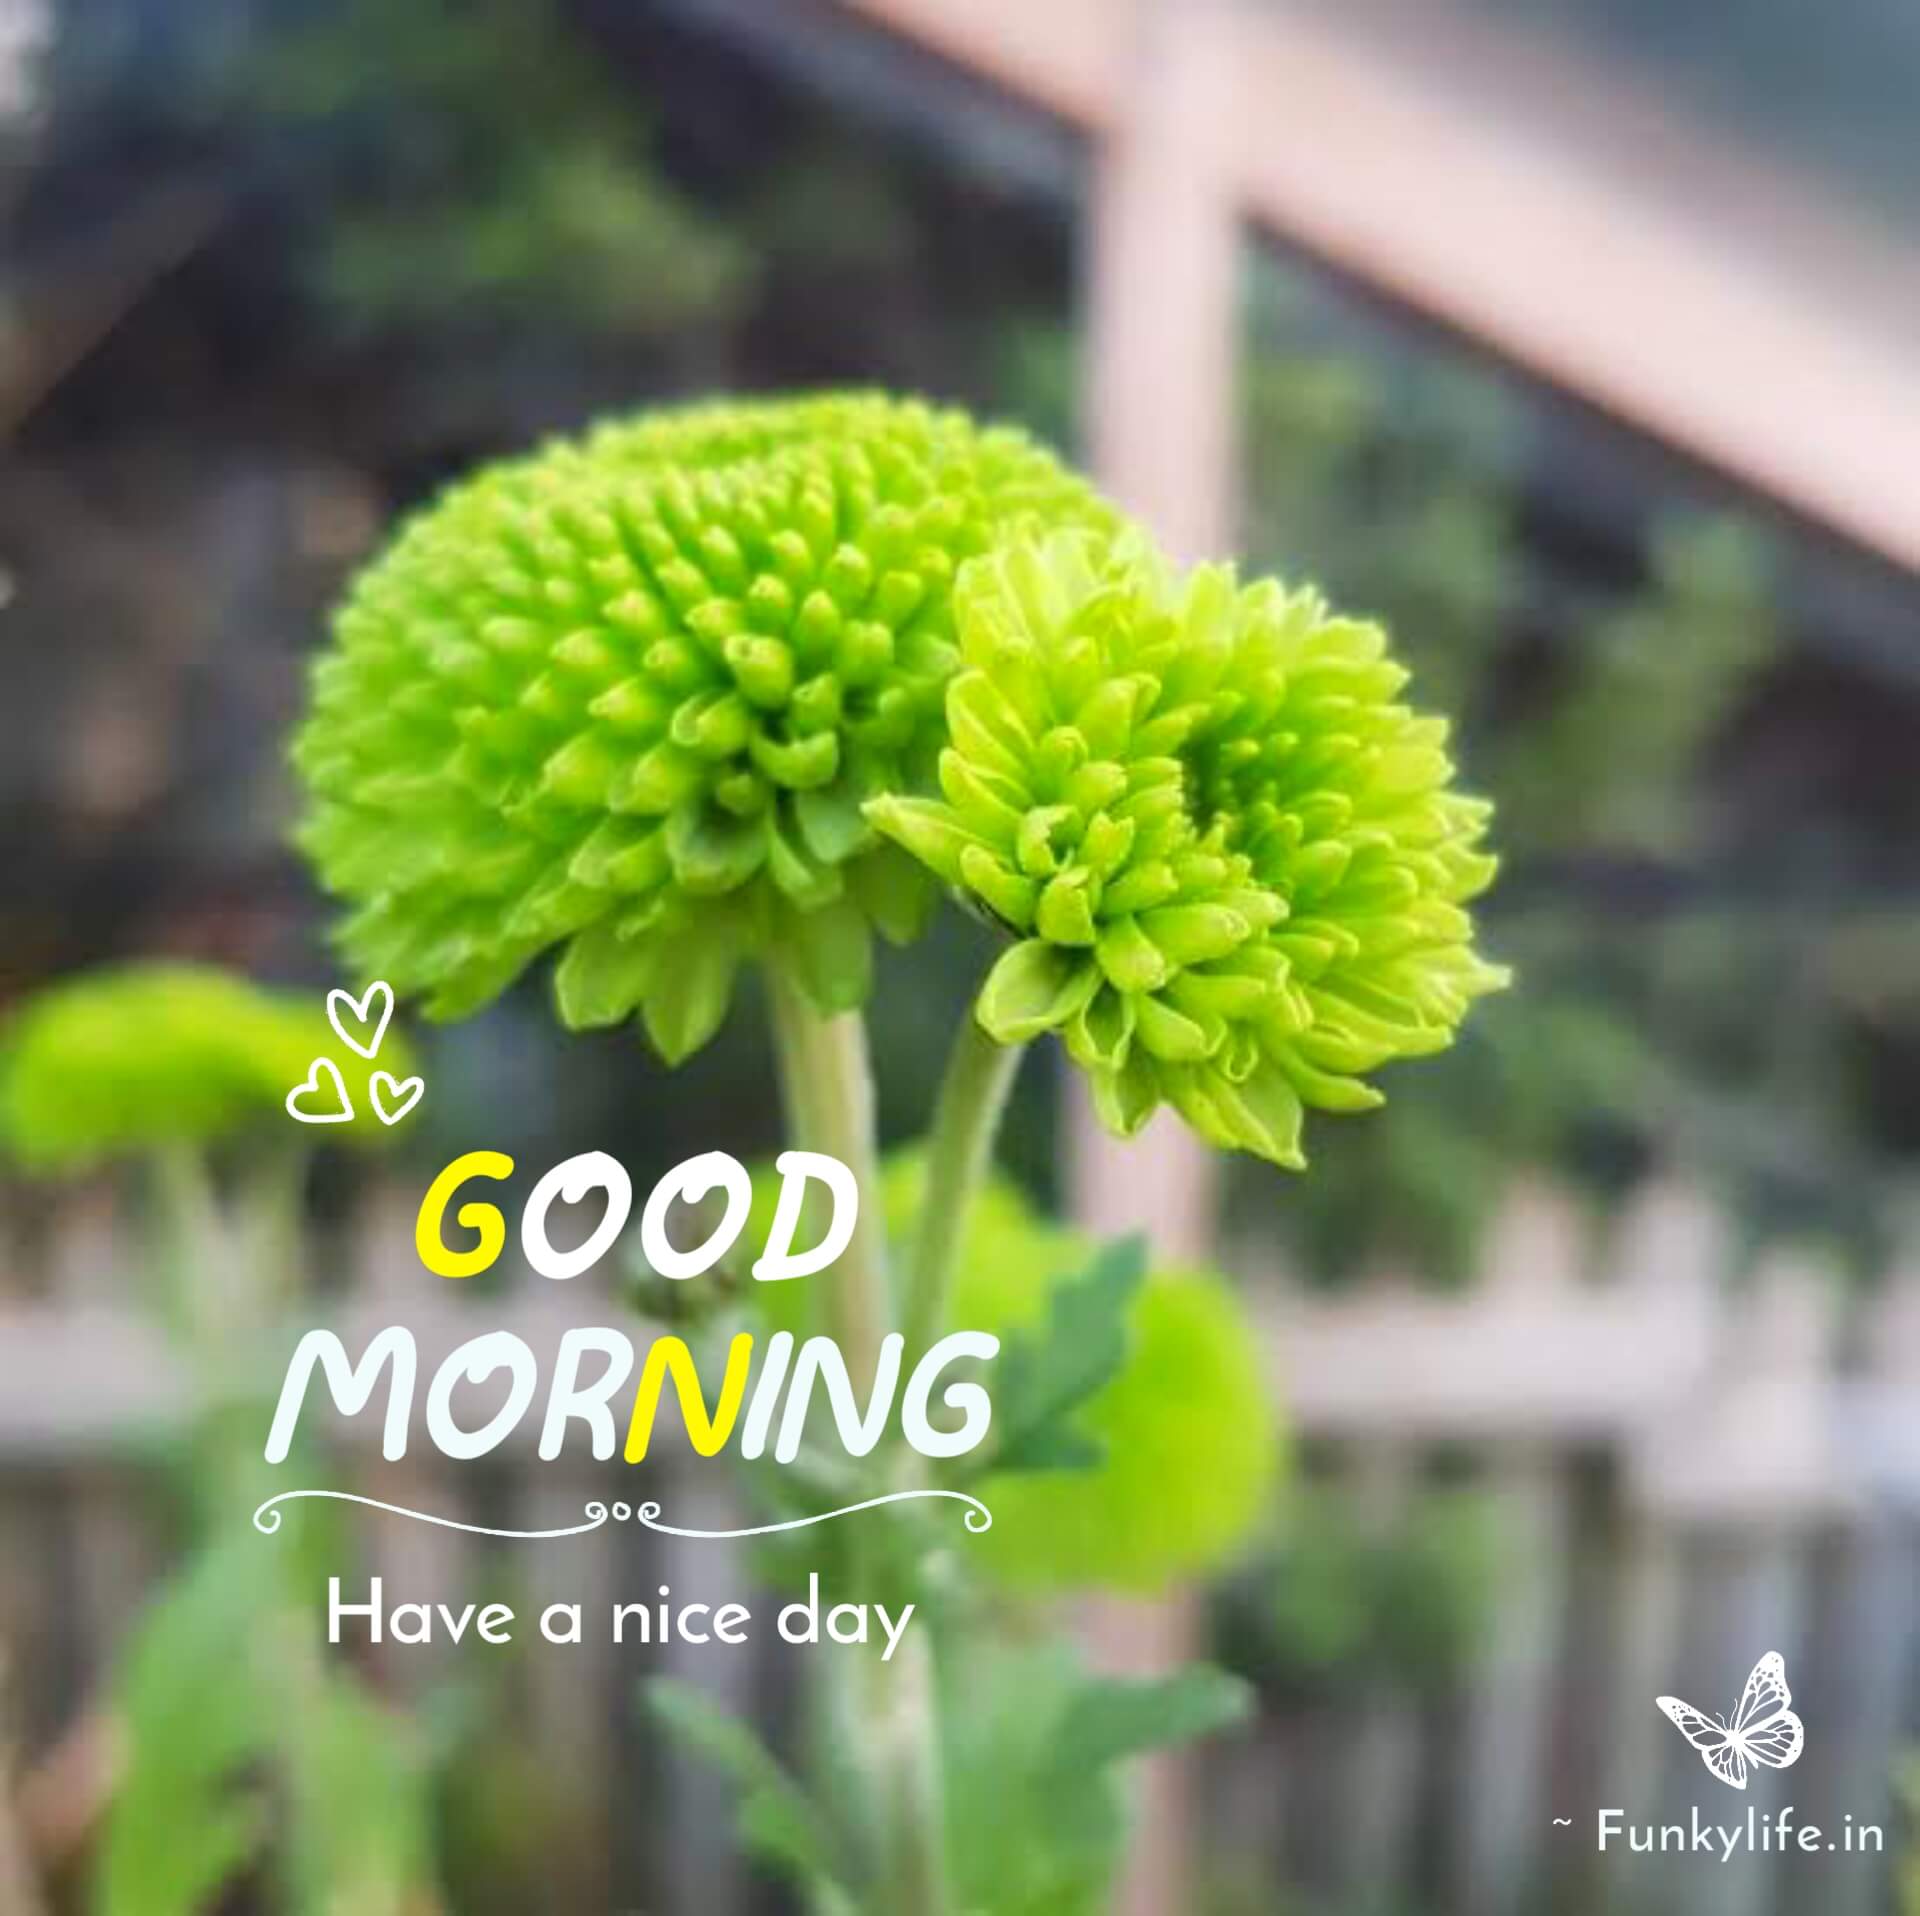 Green Flower Good Morning Images